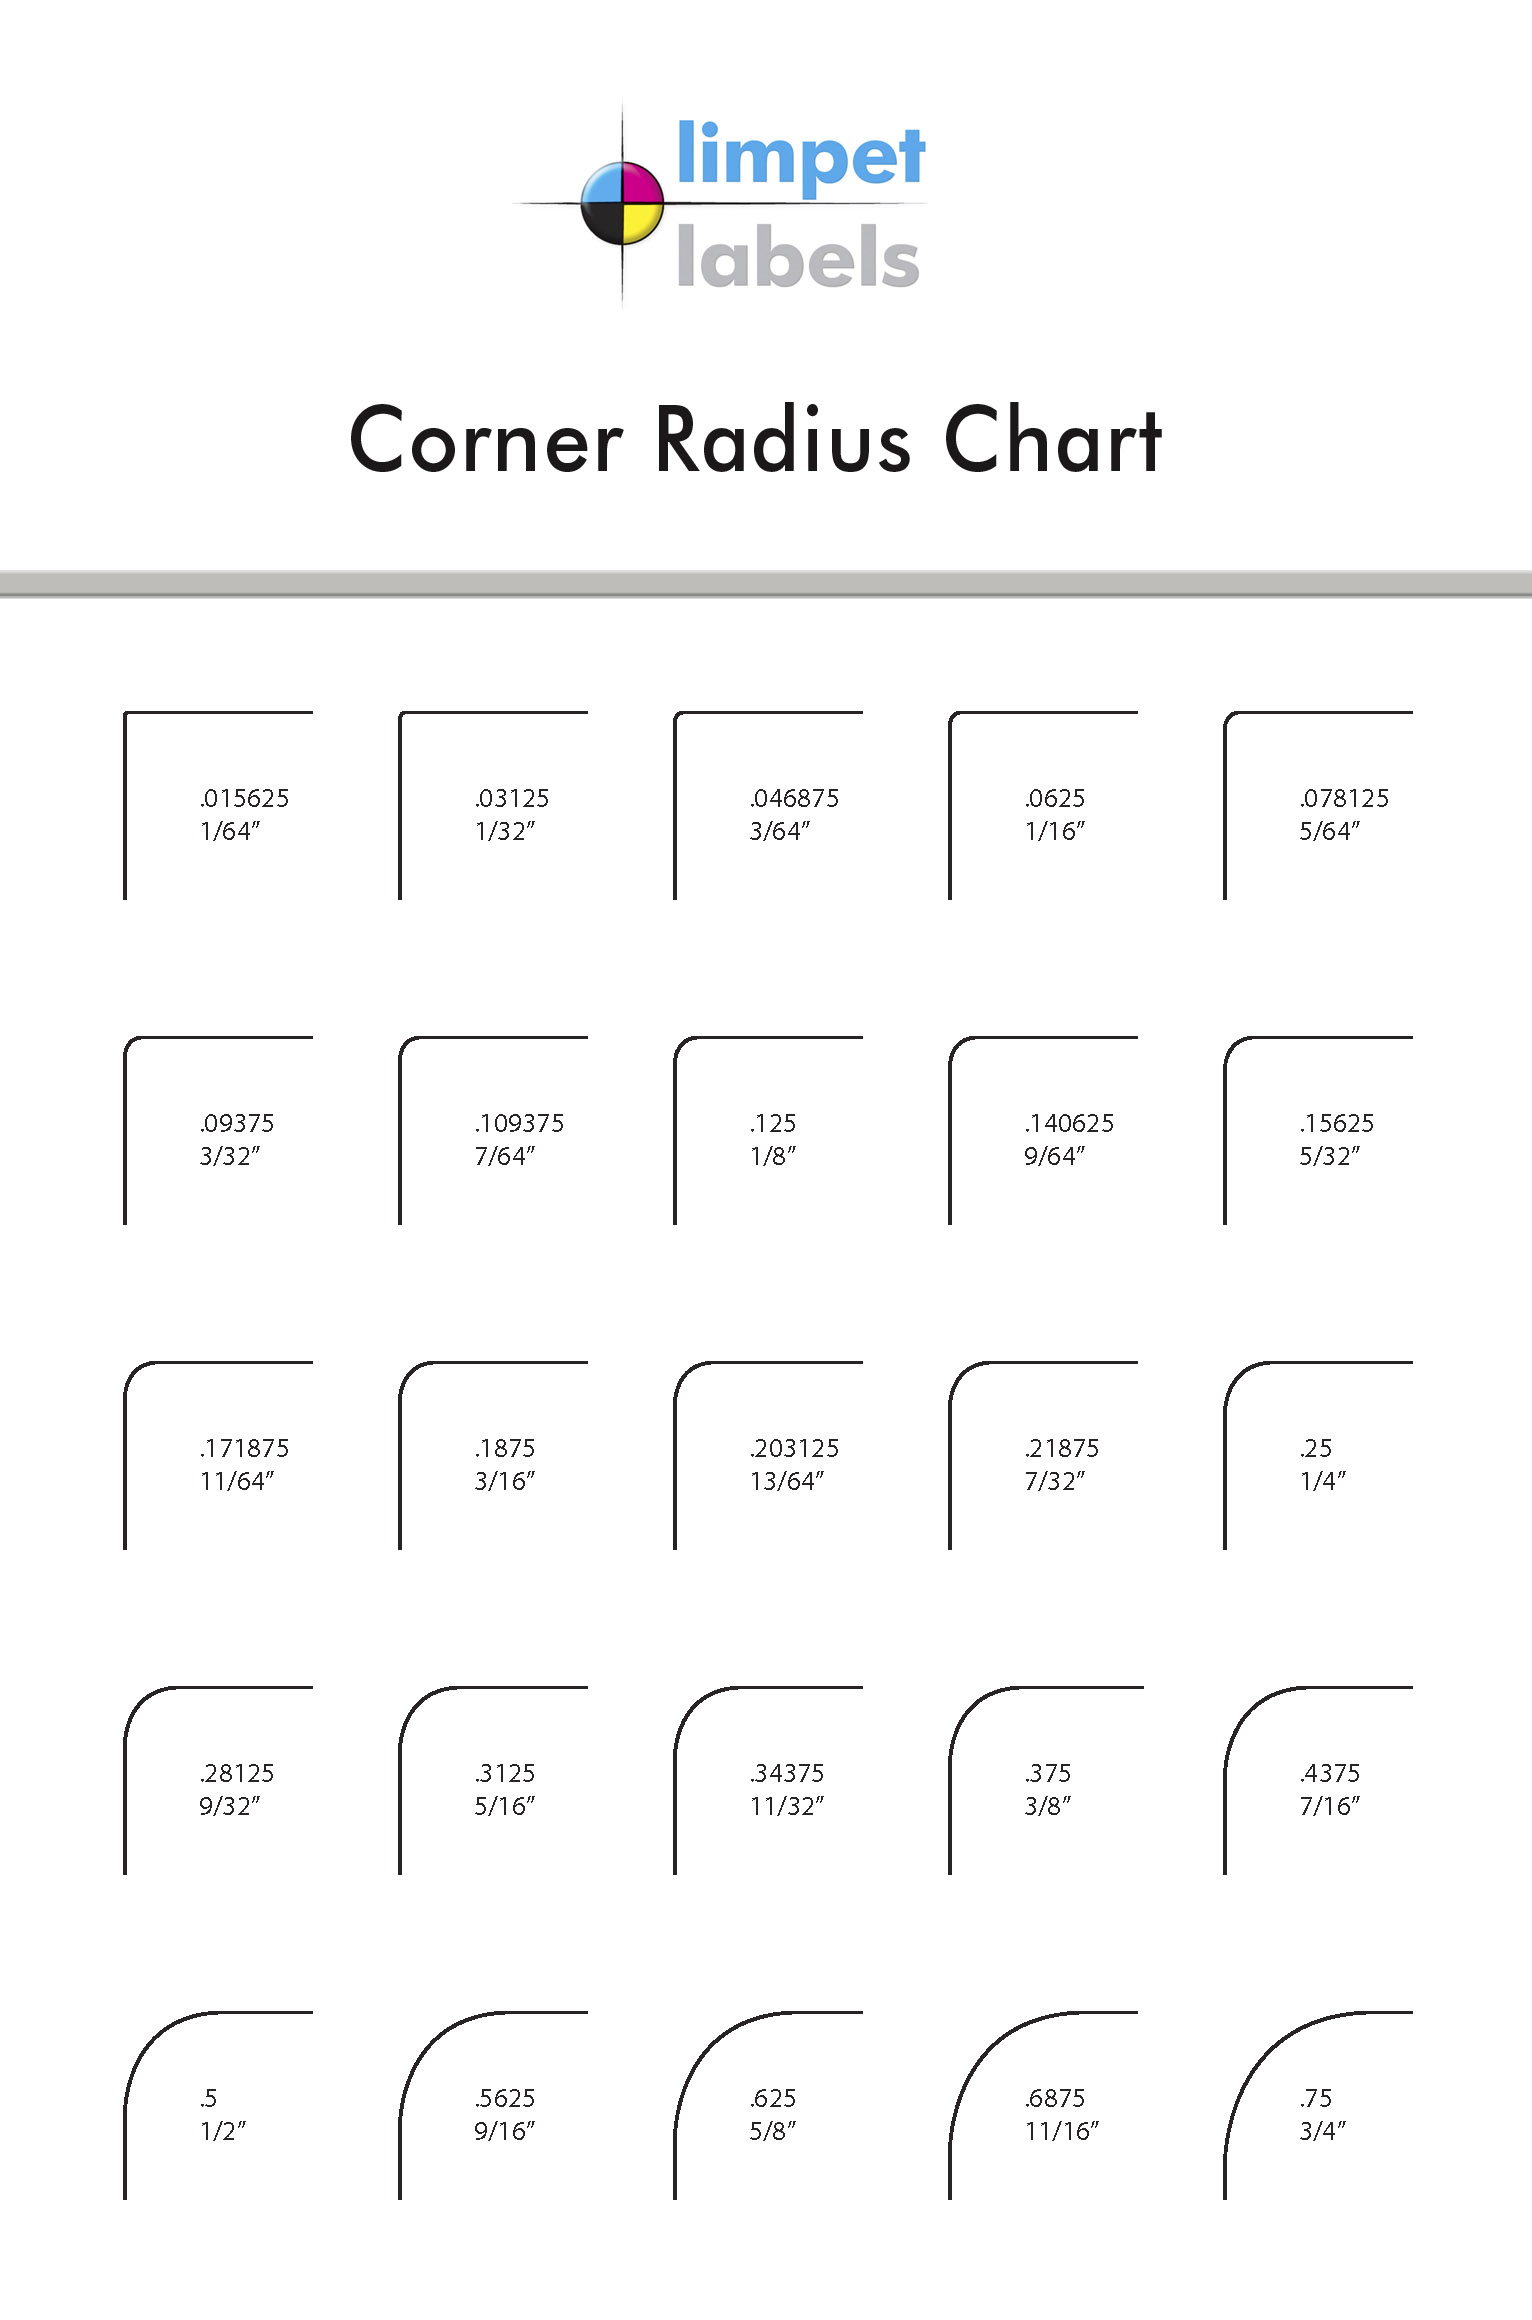 cornerradiuschart.jpg — Are.na